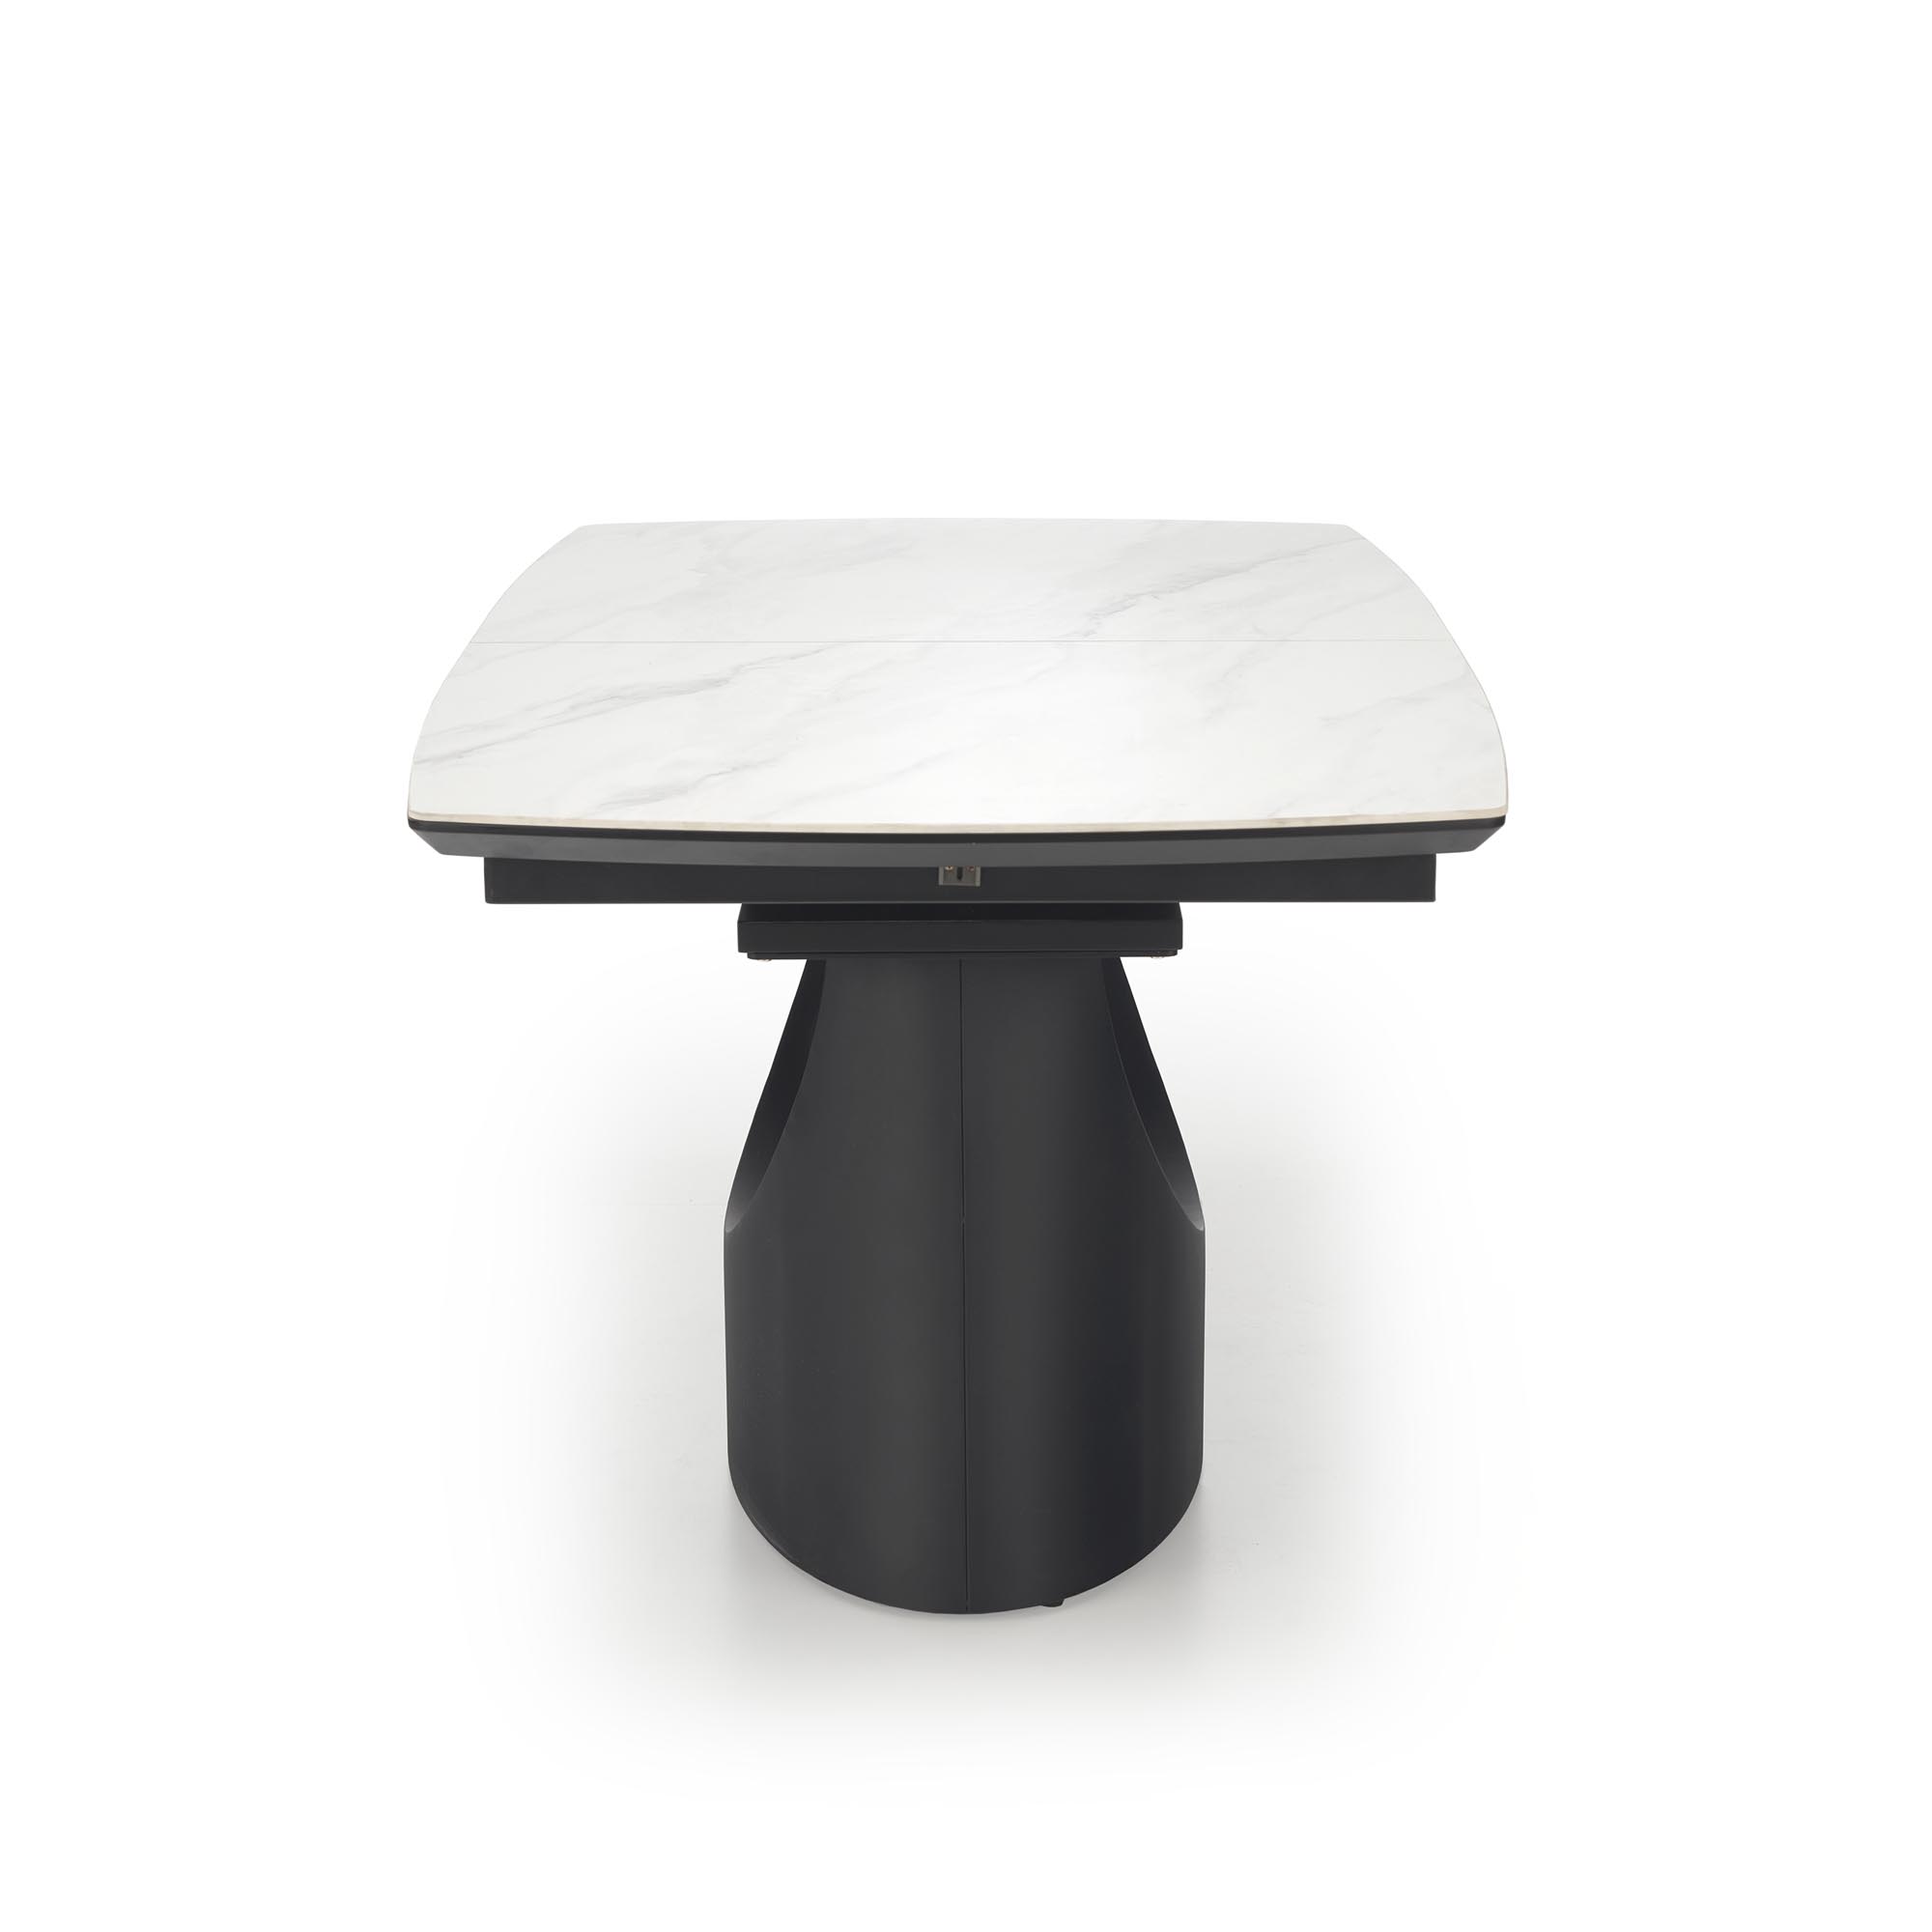 Stół rozkładany 160-220x90 Osman - biały marmur / czarny stół rozkładany 160-220x90 osman - biały marmur / czarny